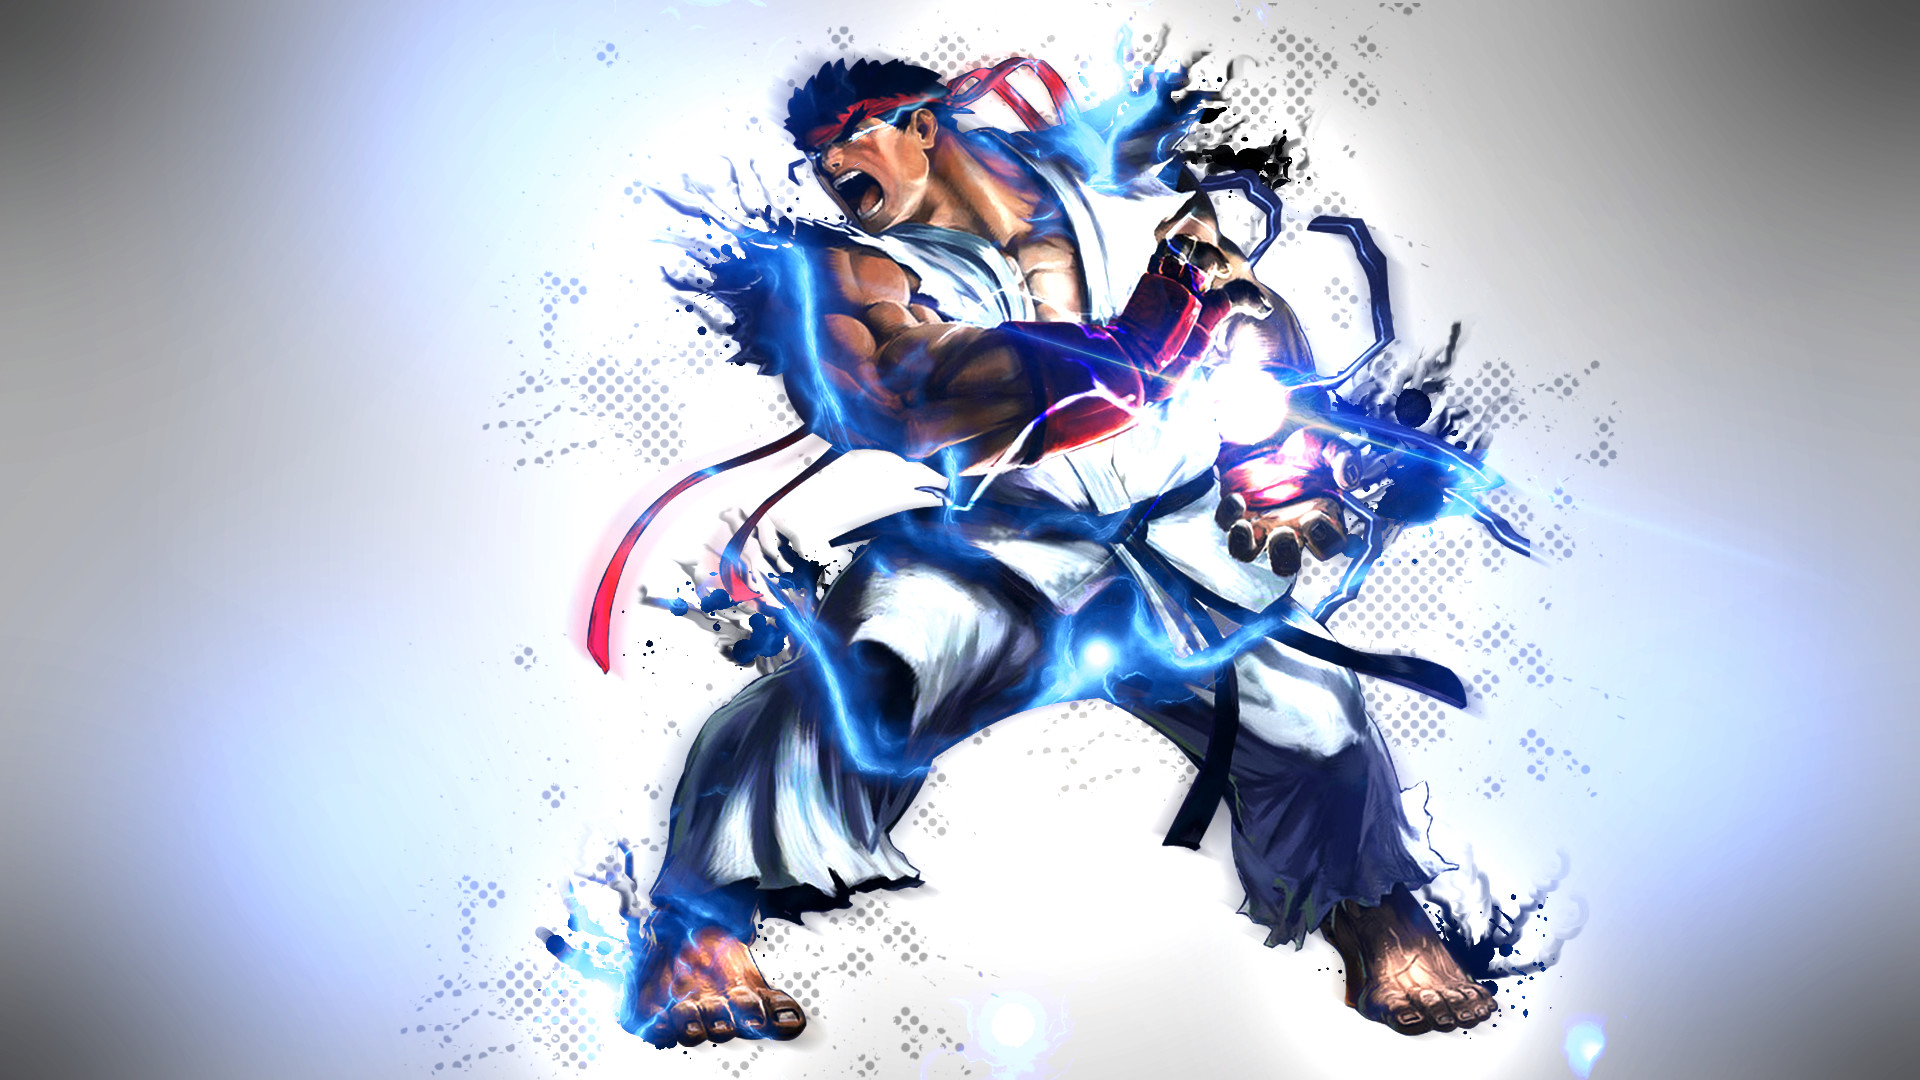 fondo de pantalla de ryu street fighter,diseño gráfico,ilustración,anime,personaje de ficción,arte